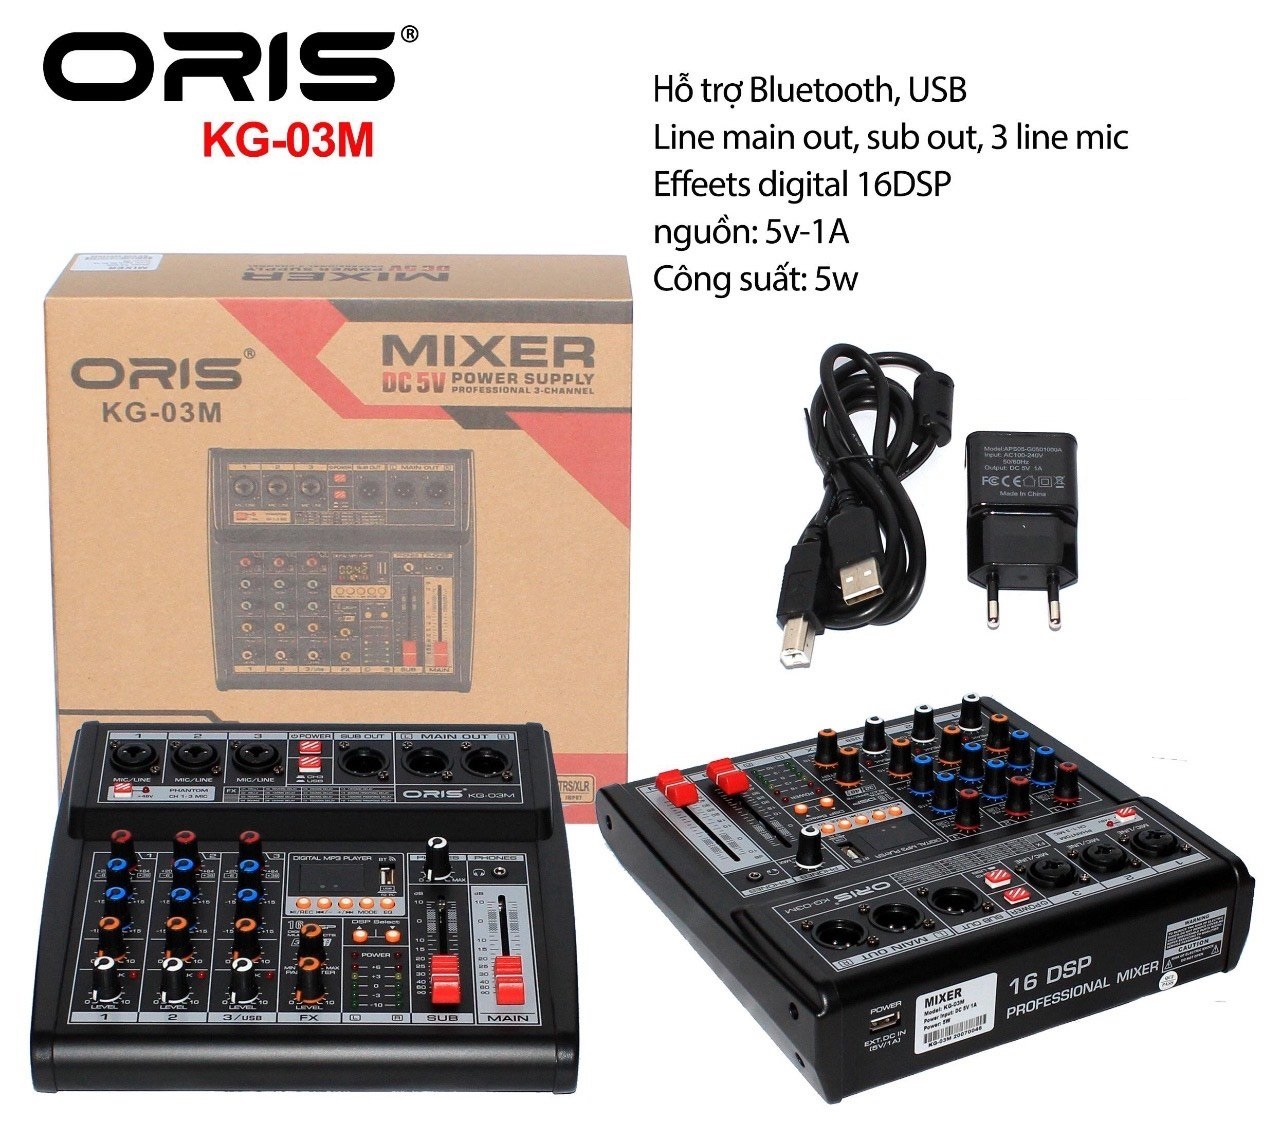 Bàn Mixer Oris KG-03M có Bluetooth